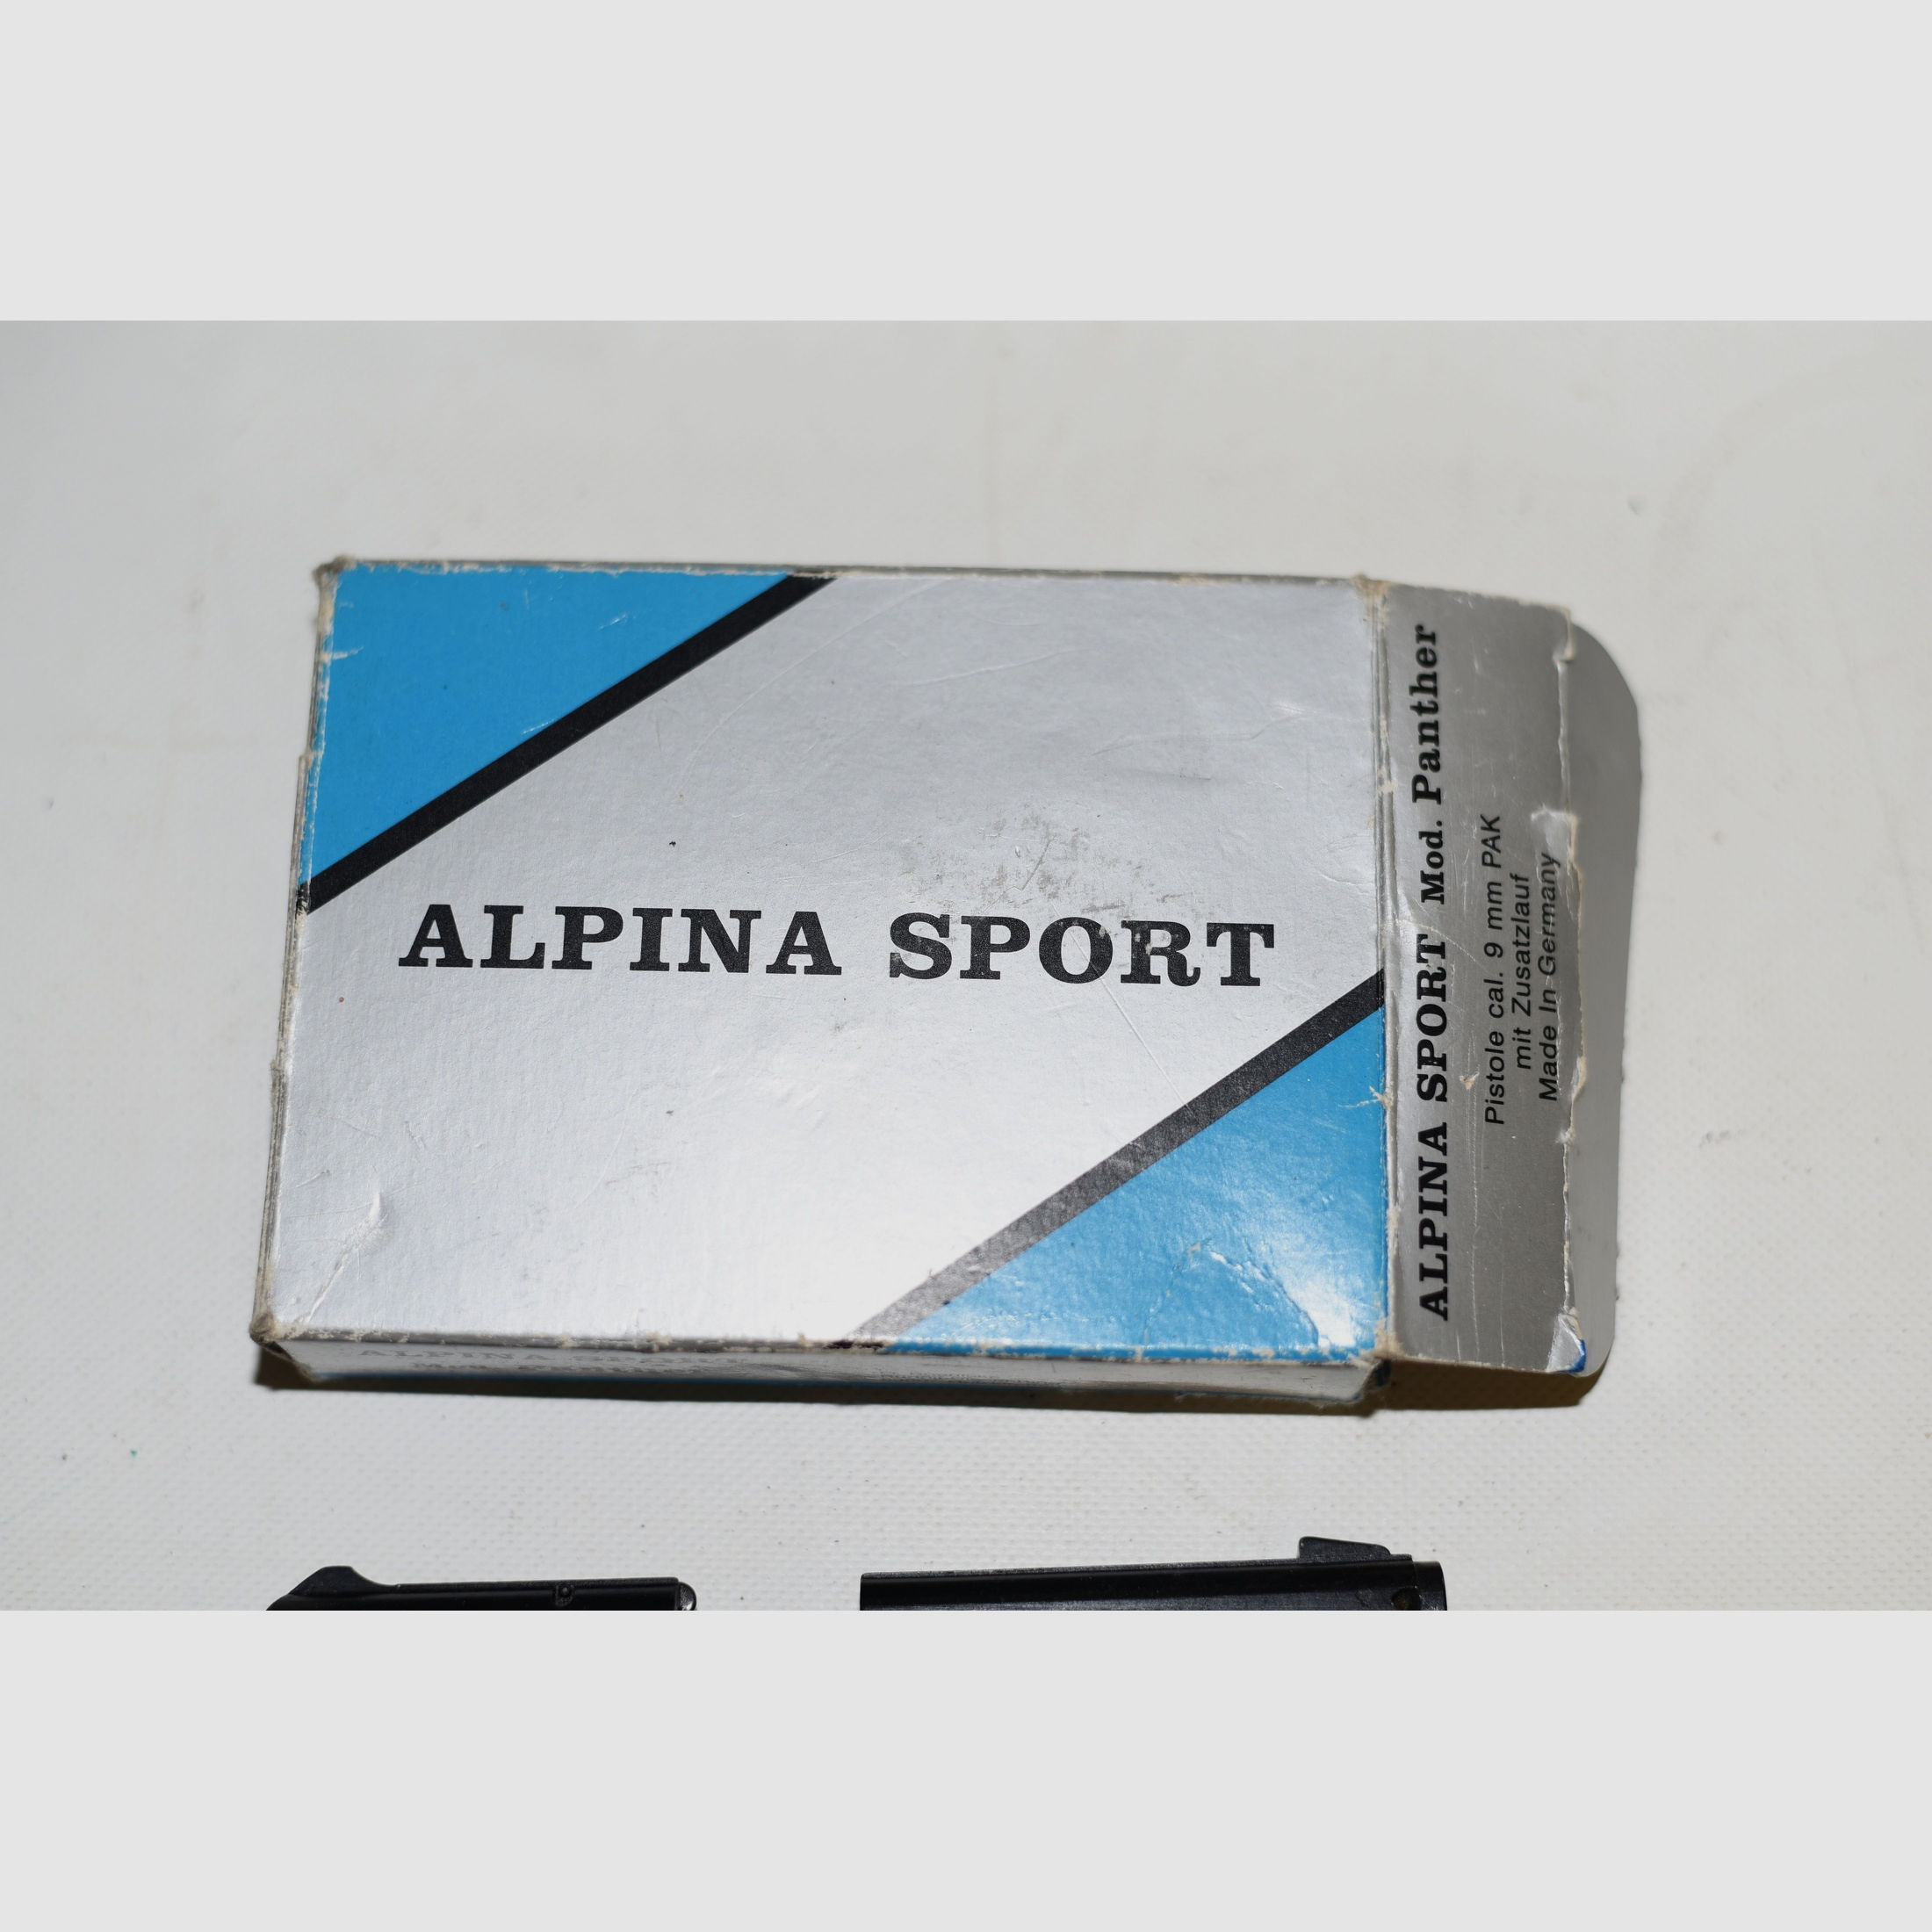 Alpina Sport Mod. Panther 9mm Knall